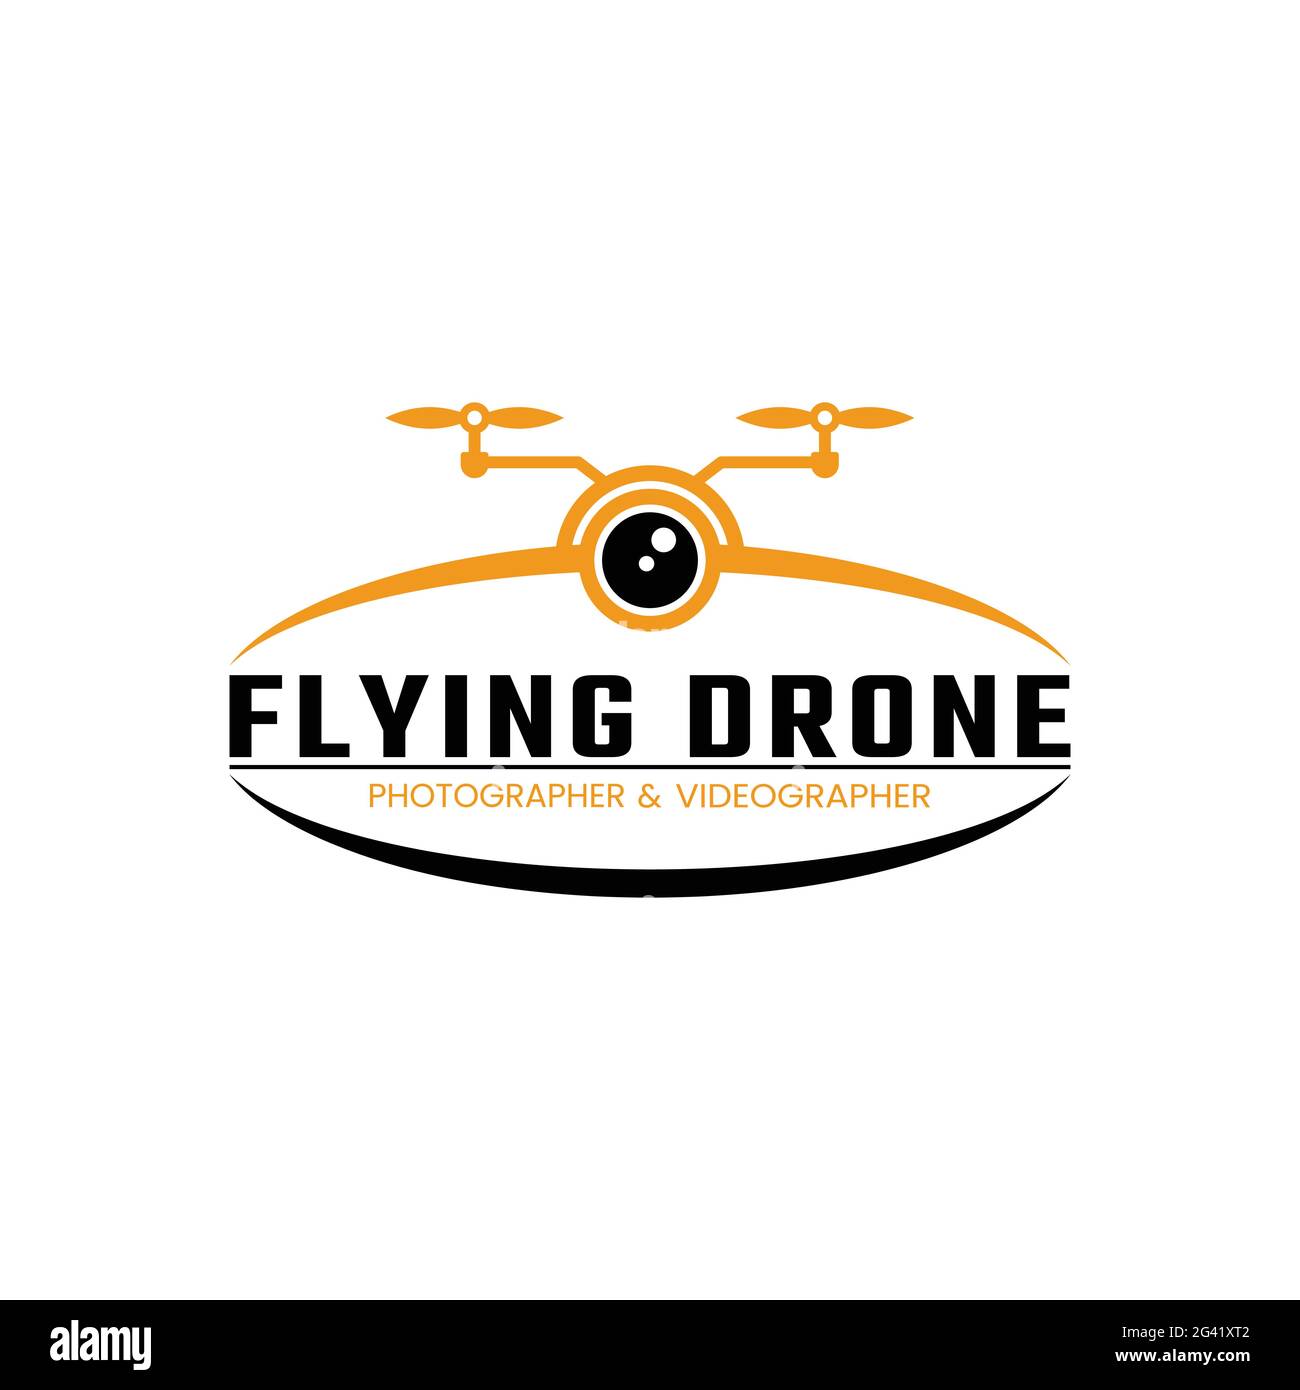 Modello di disegno del logo del drone volante. Adatto per la fotografia Videografia Multimedia Broadcasting Delivery Company Business Corporate Brand Simple Illustrazione Vettoriale